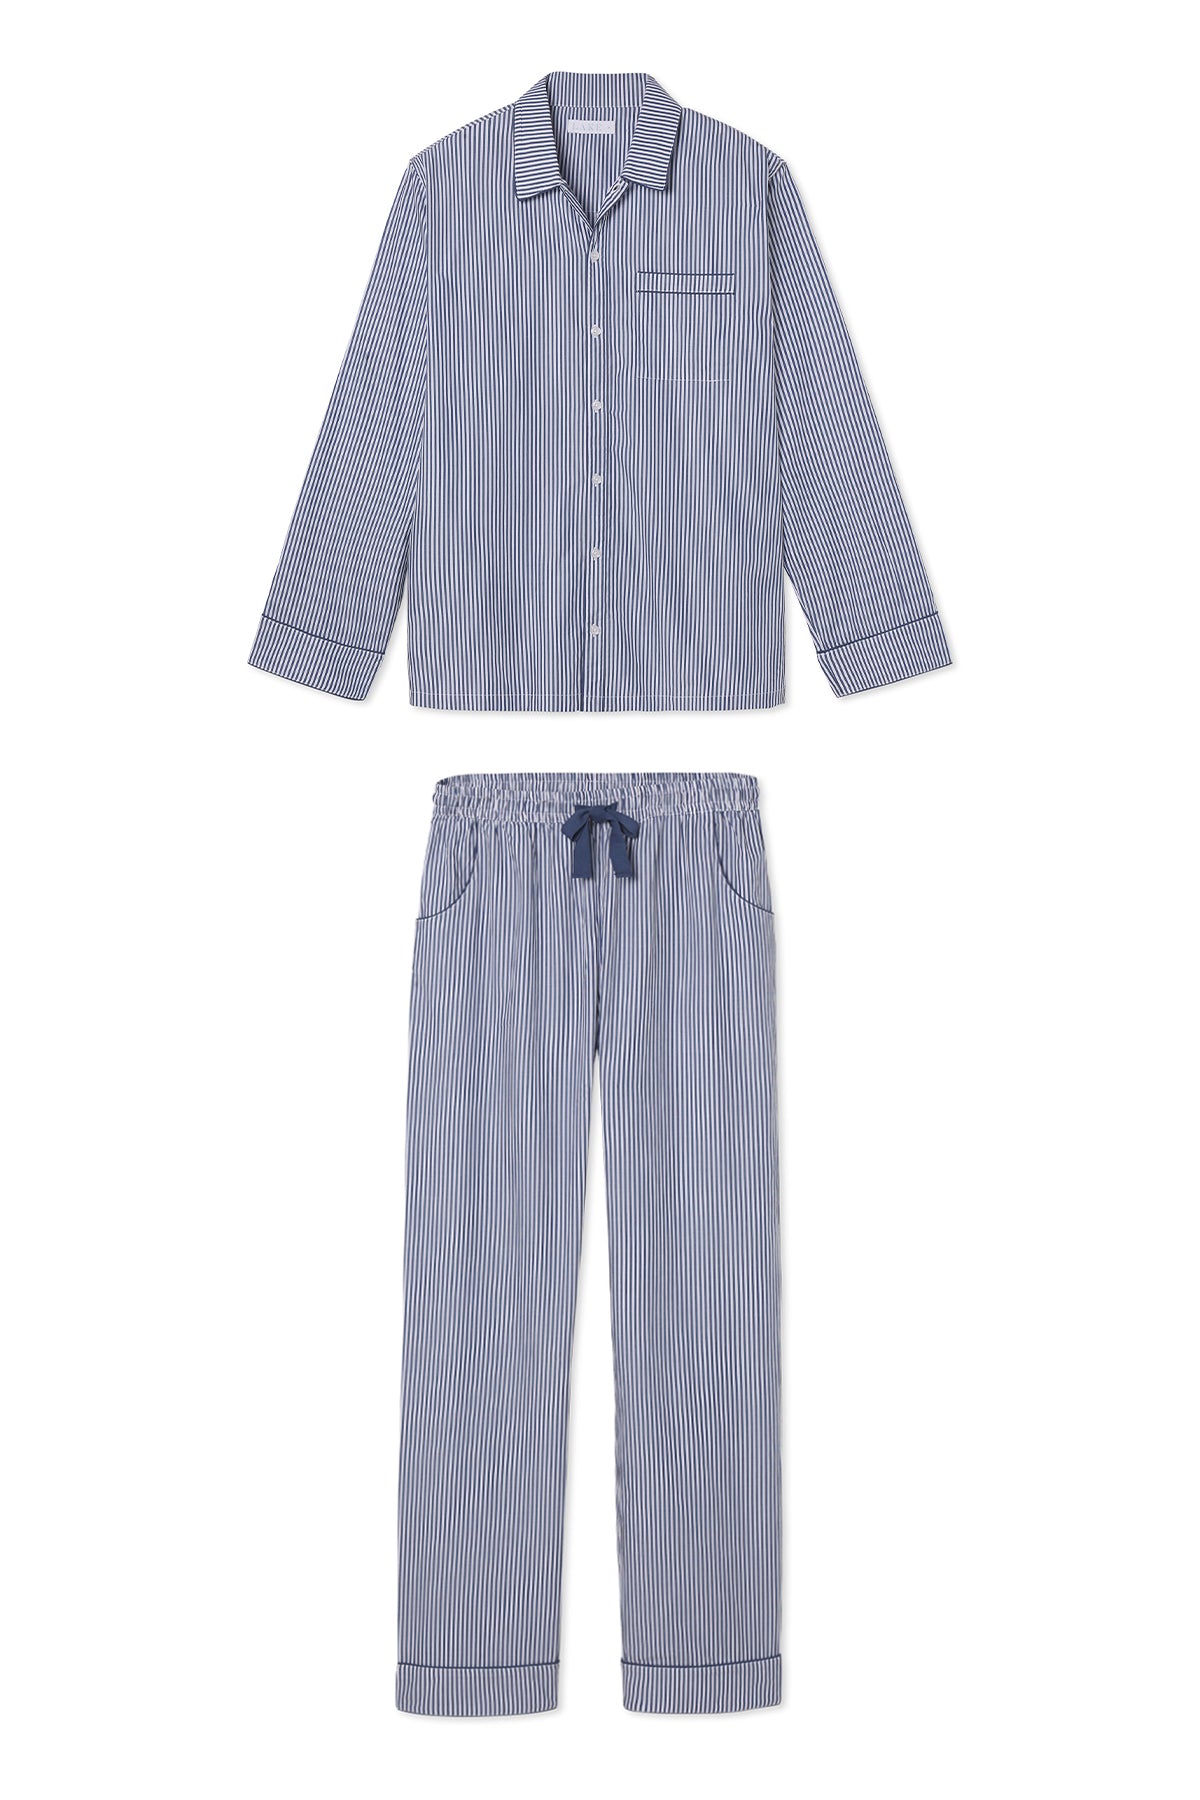 Men's Poplin Pajama Set in Navy Stripe